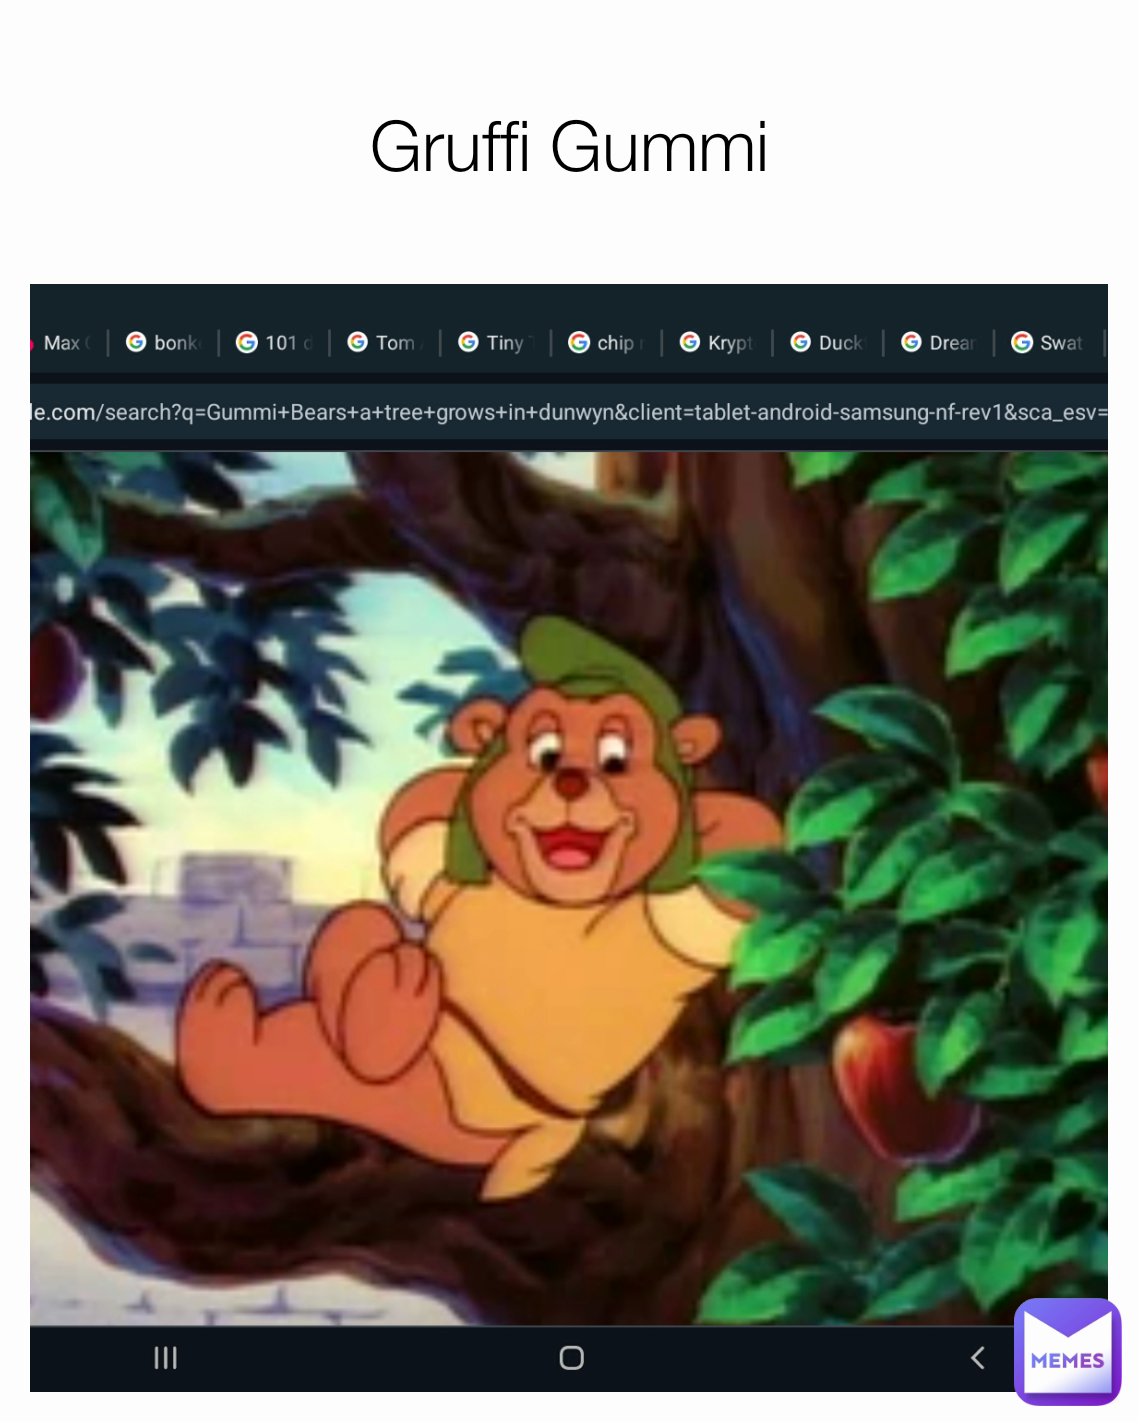 Gruffi Gummi